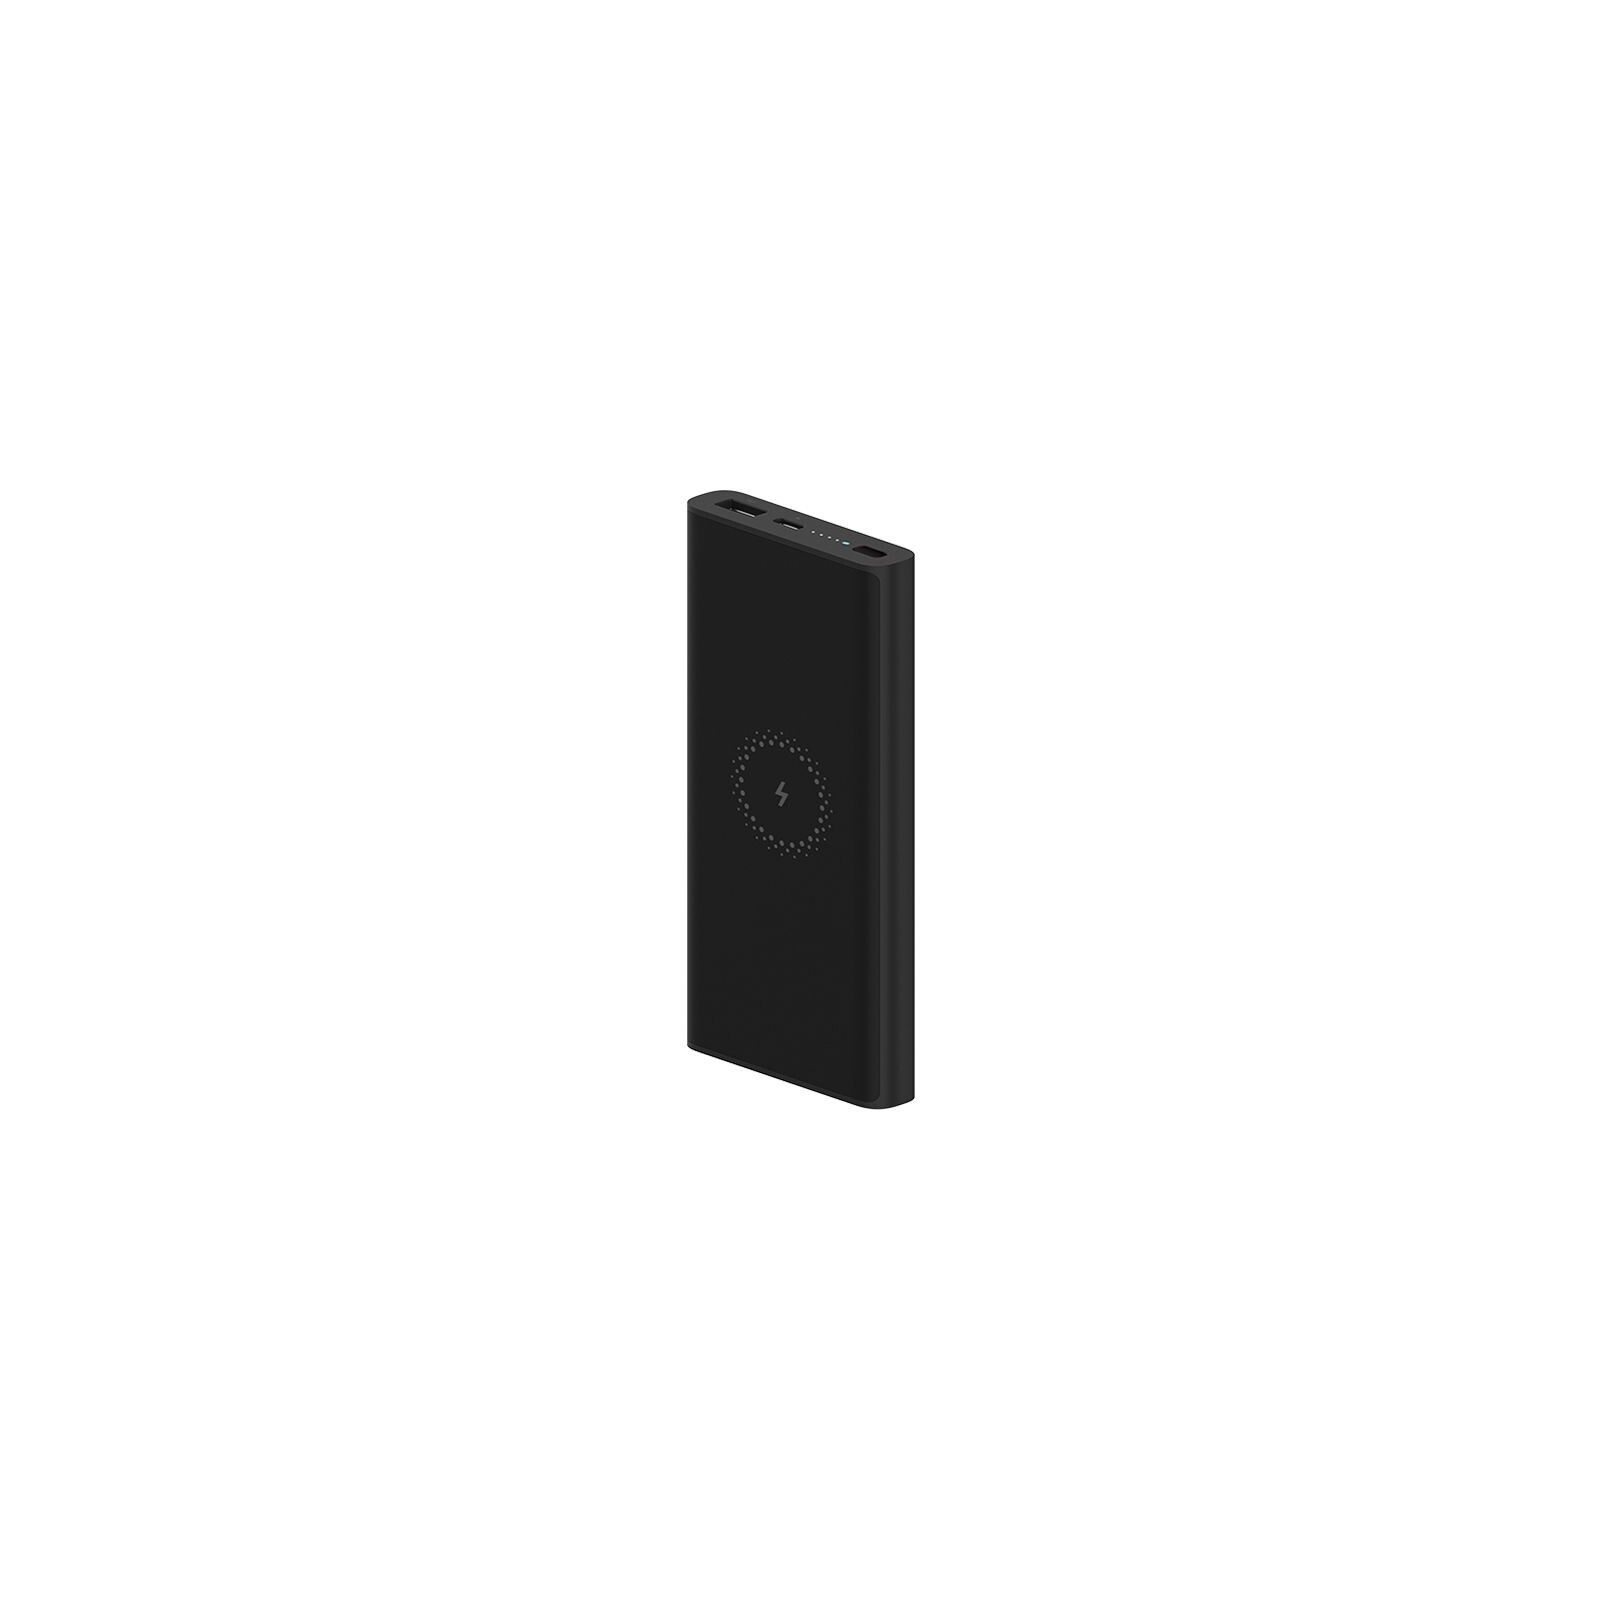 Батарея универсальная Xiaomi Mi Wireless Youth Edition 10000 mAh Black (562529) изображение 2